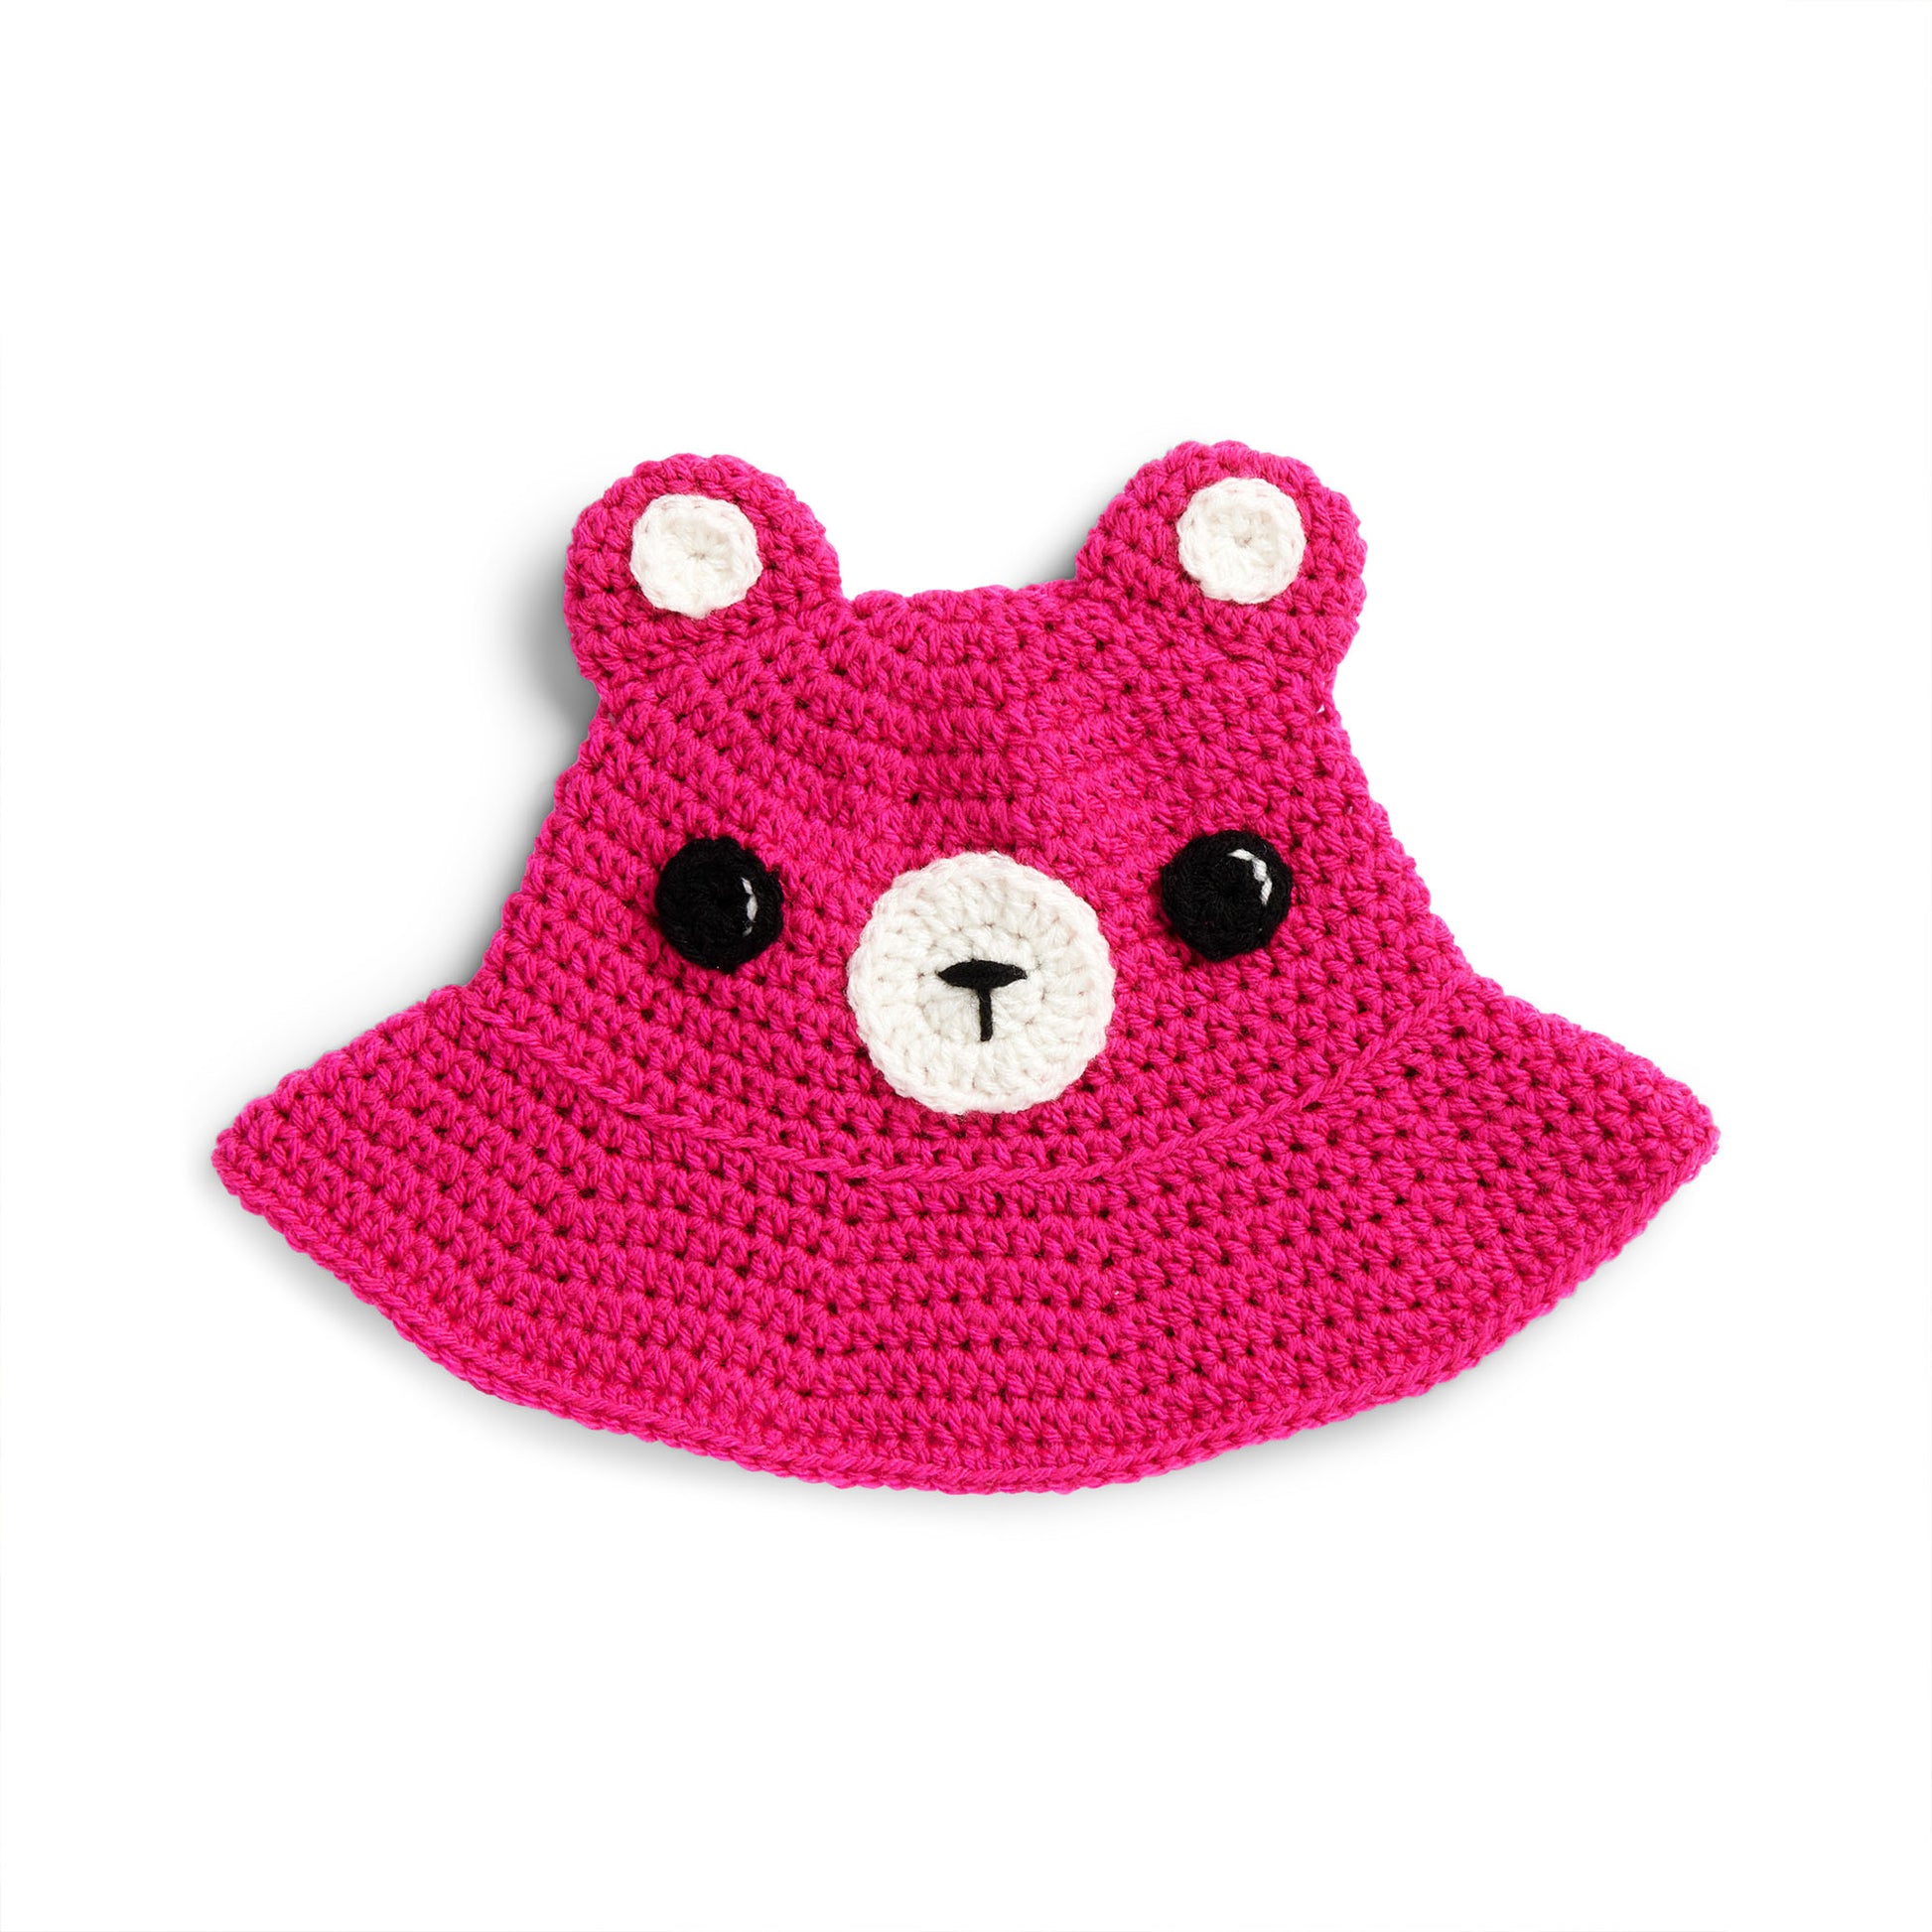 Free Red Heart Teddy Bear Crochet Bucket Hat Pattern